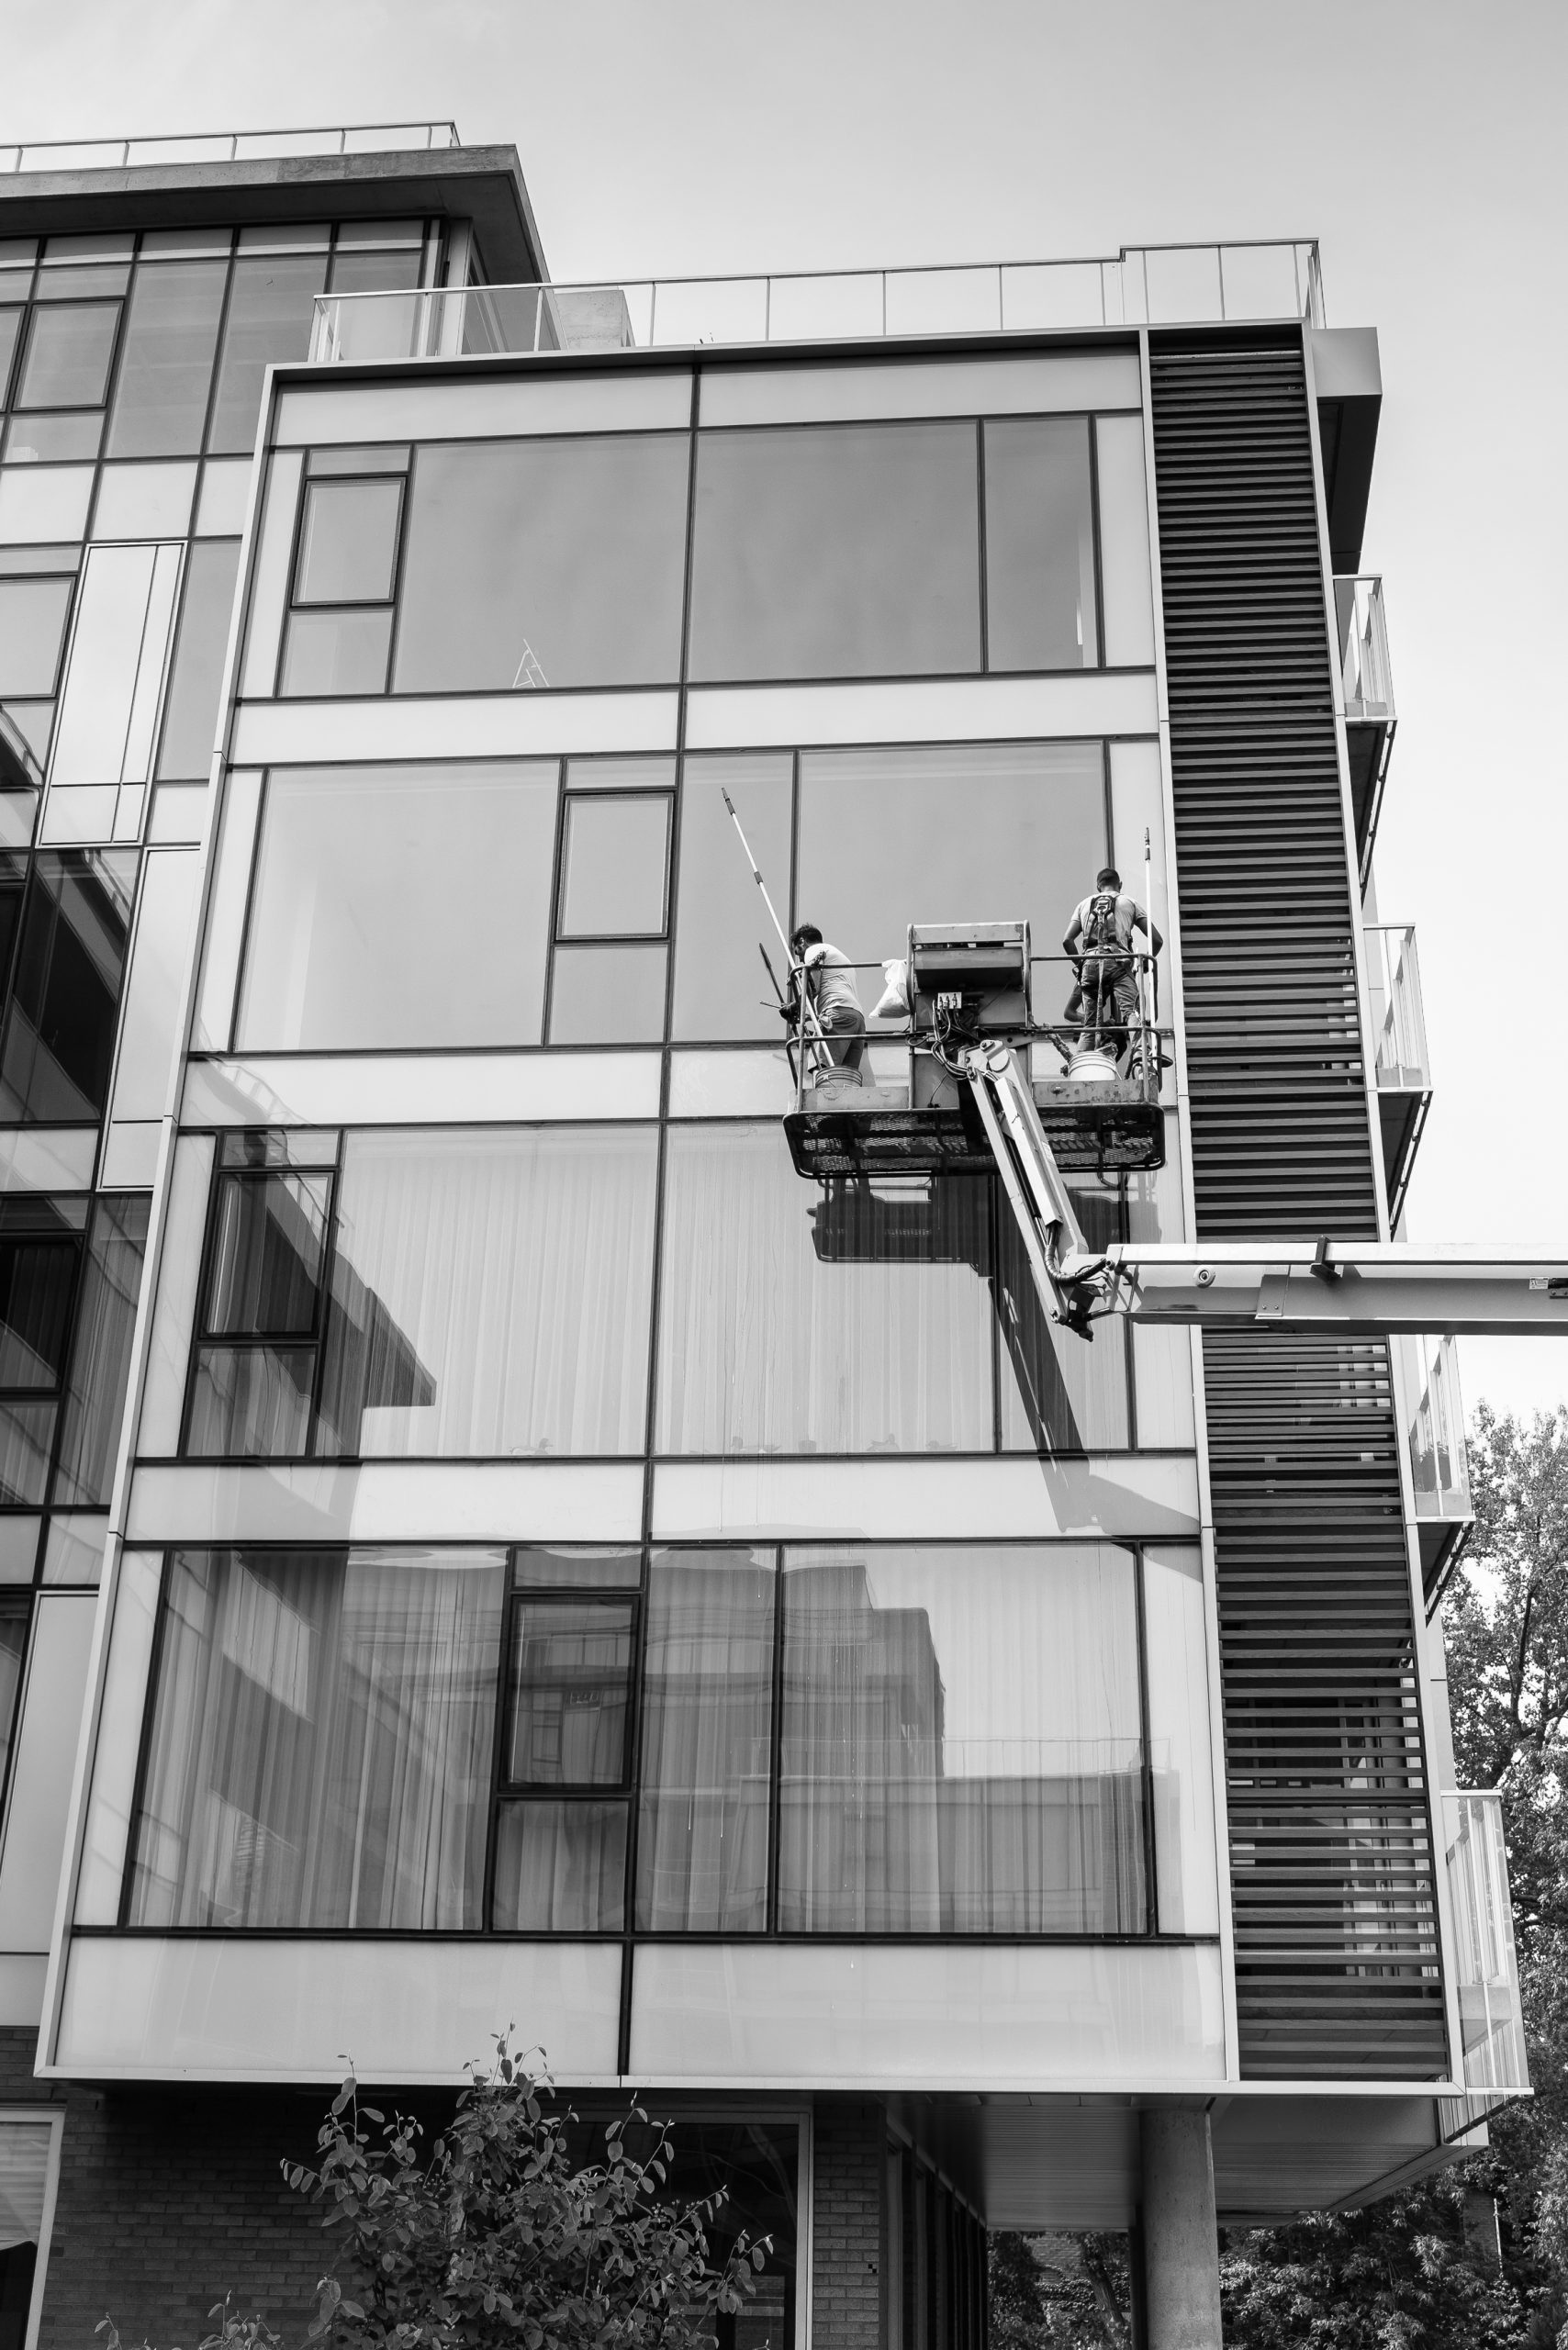 Lavage de vitres en hauteur | Groupe Impec